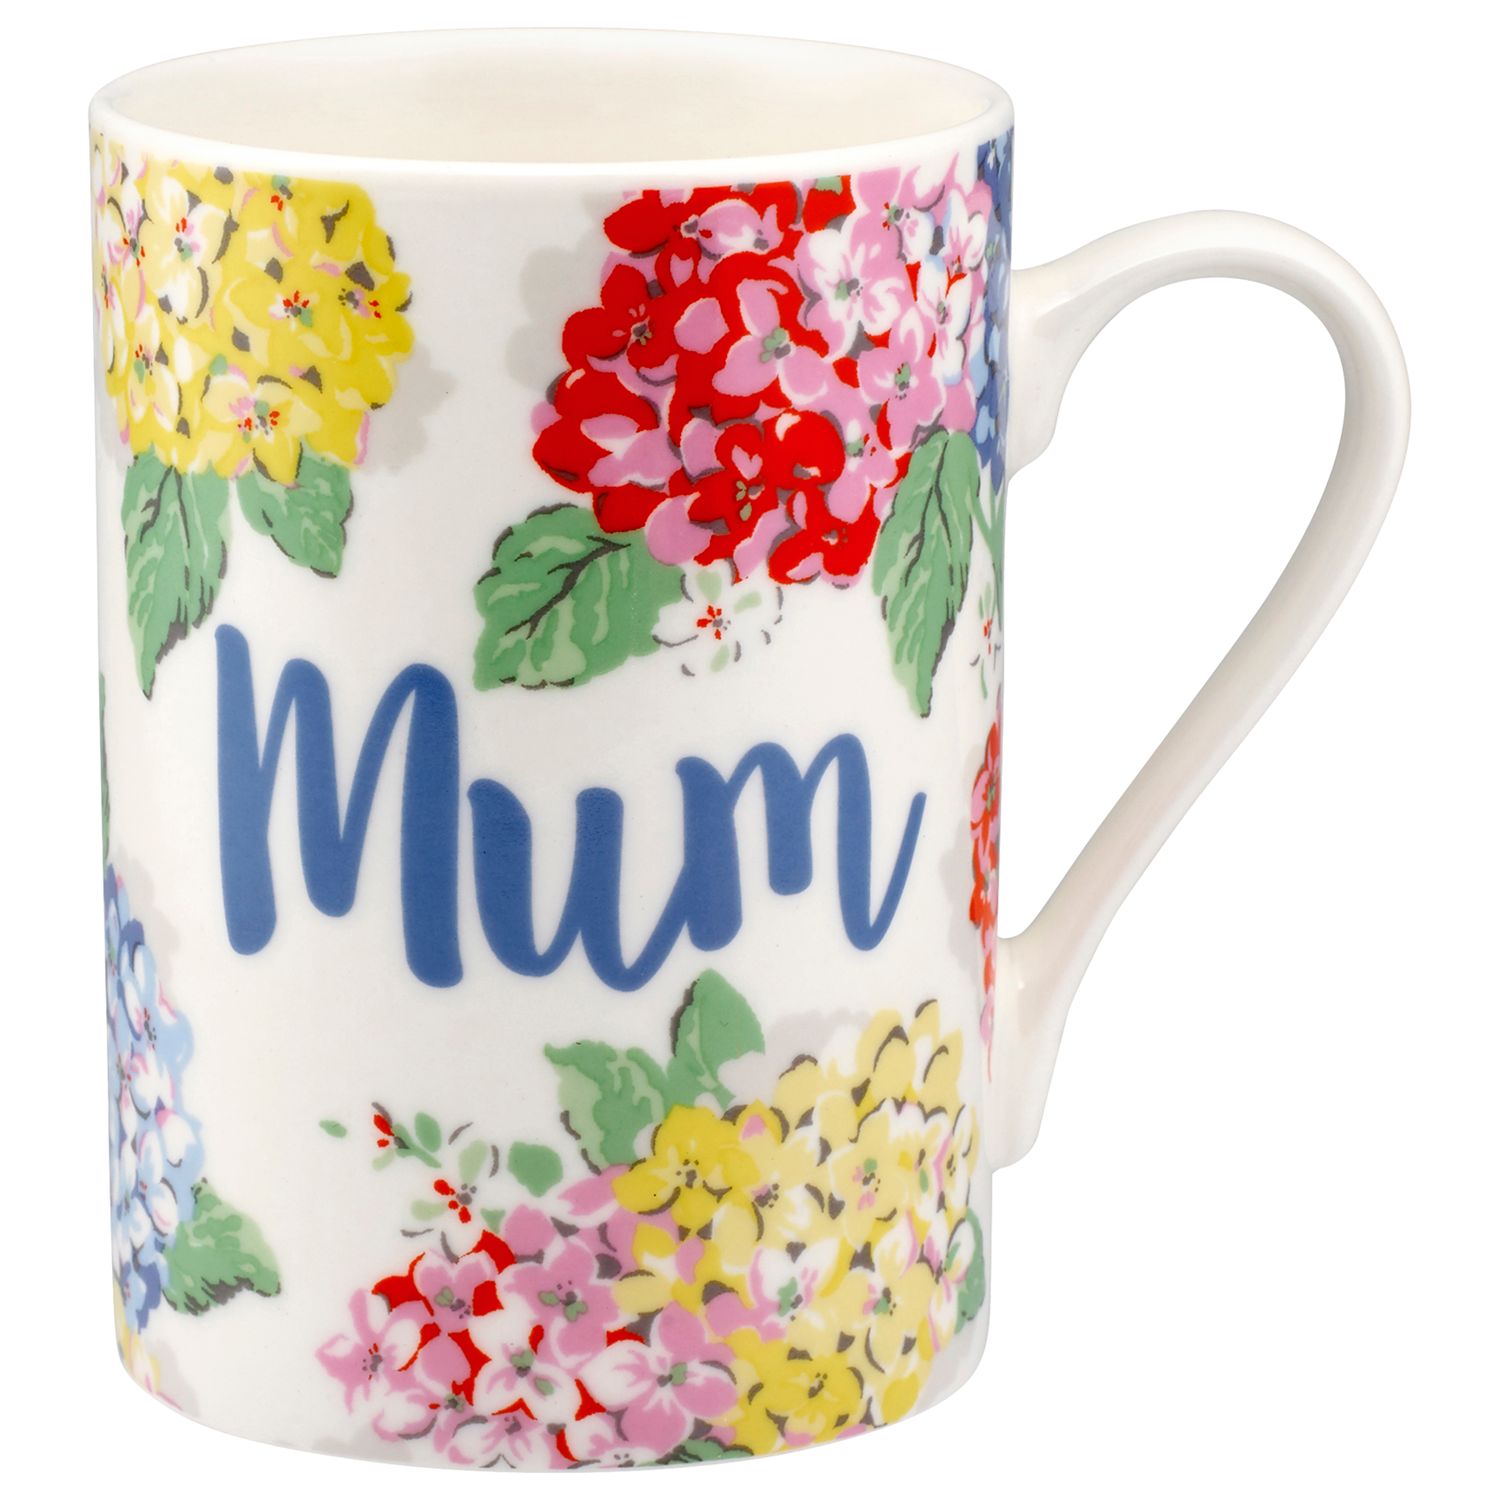 mum mug cath kidston